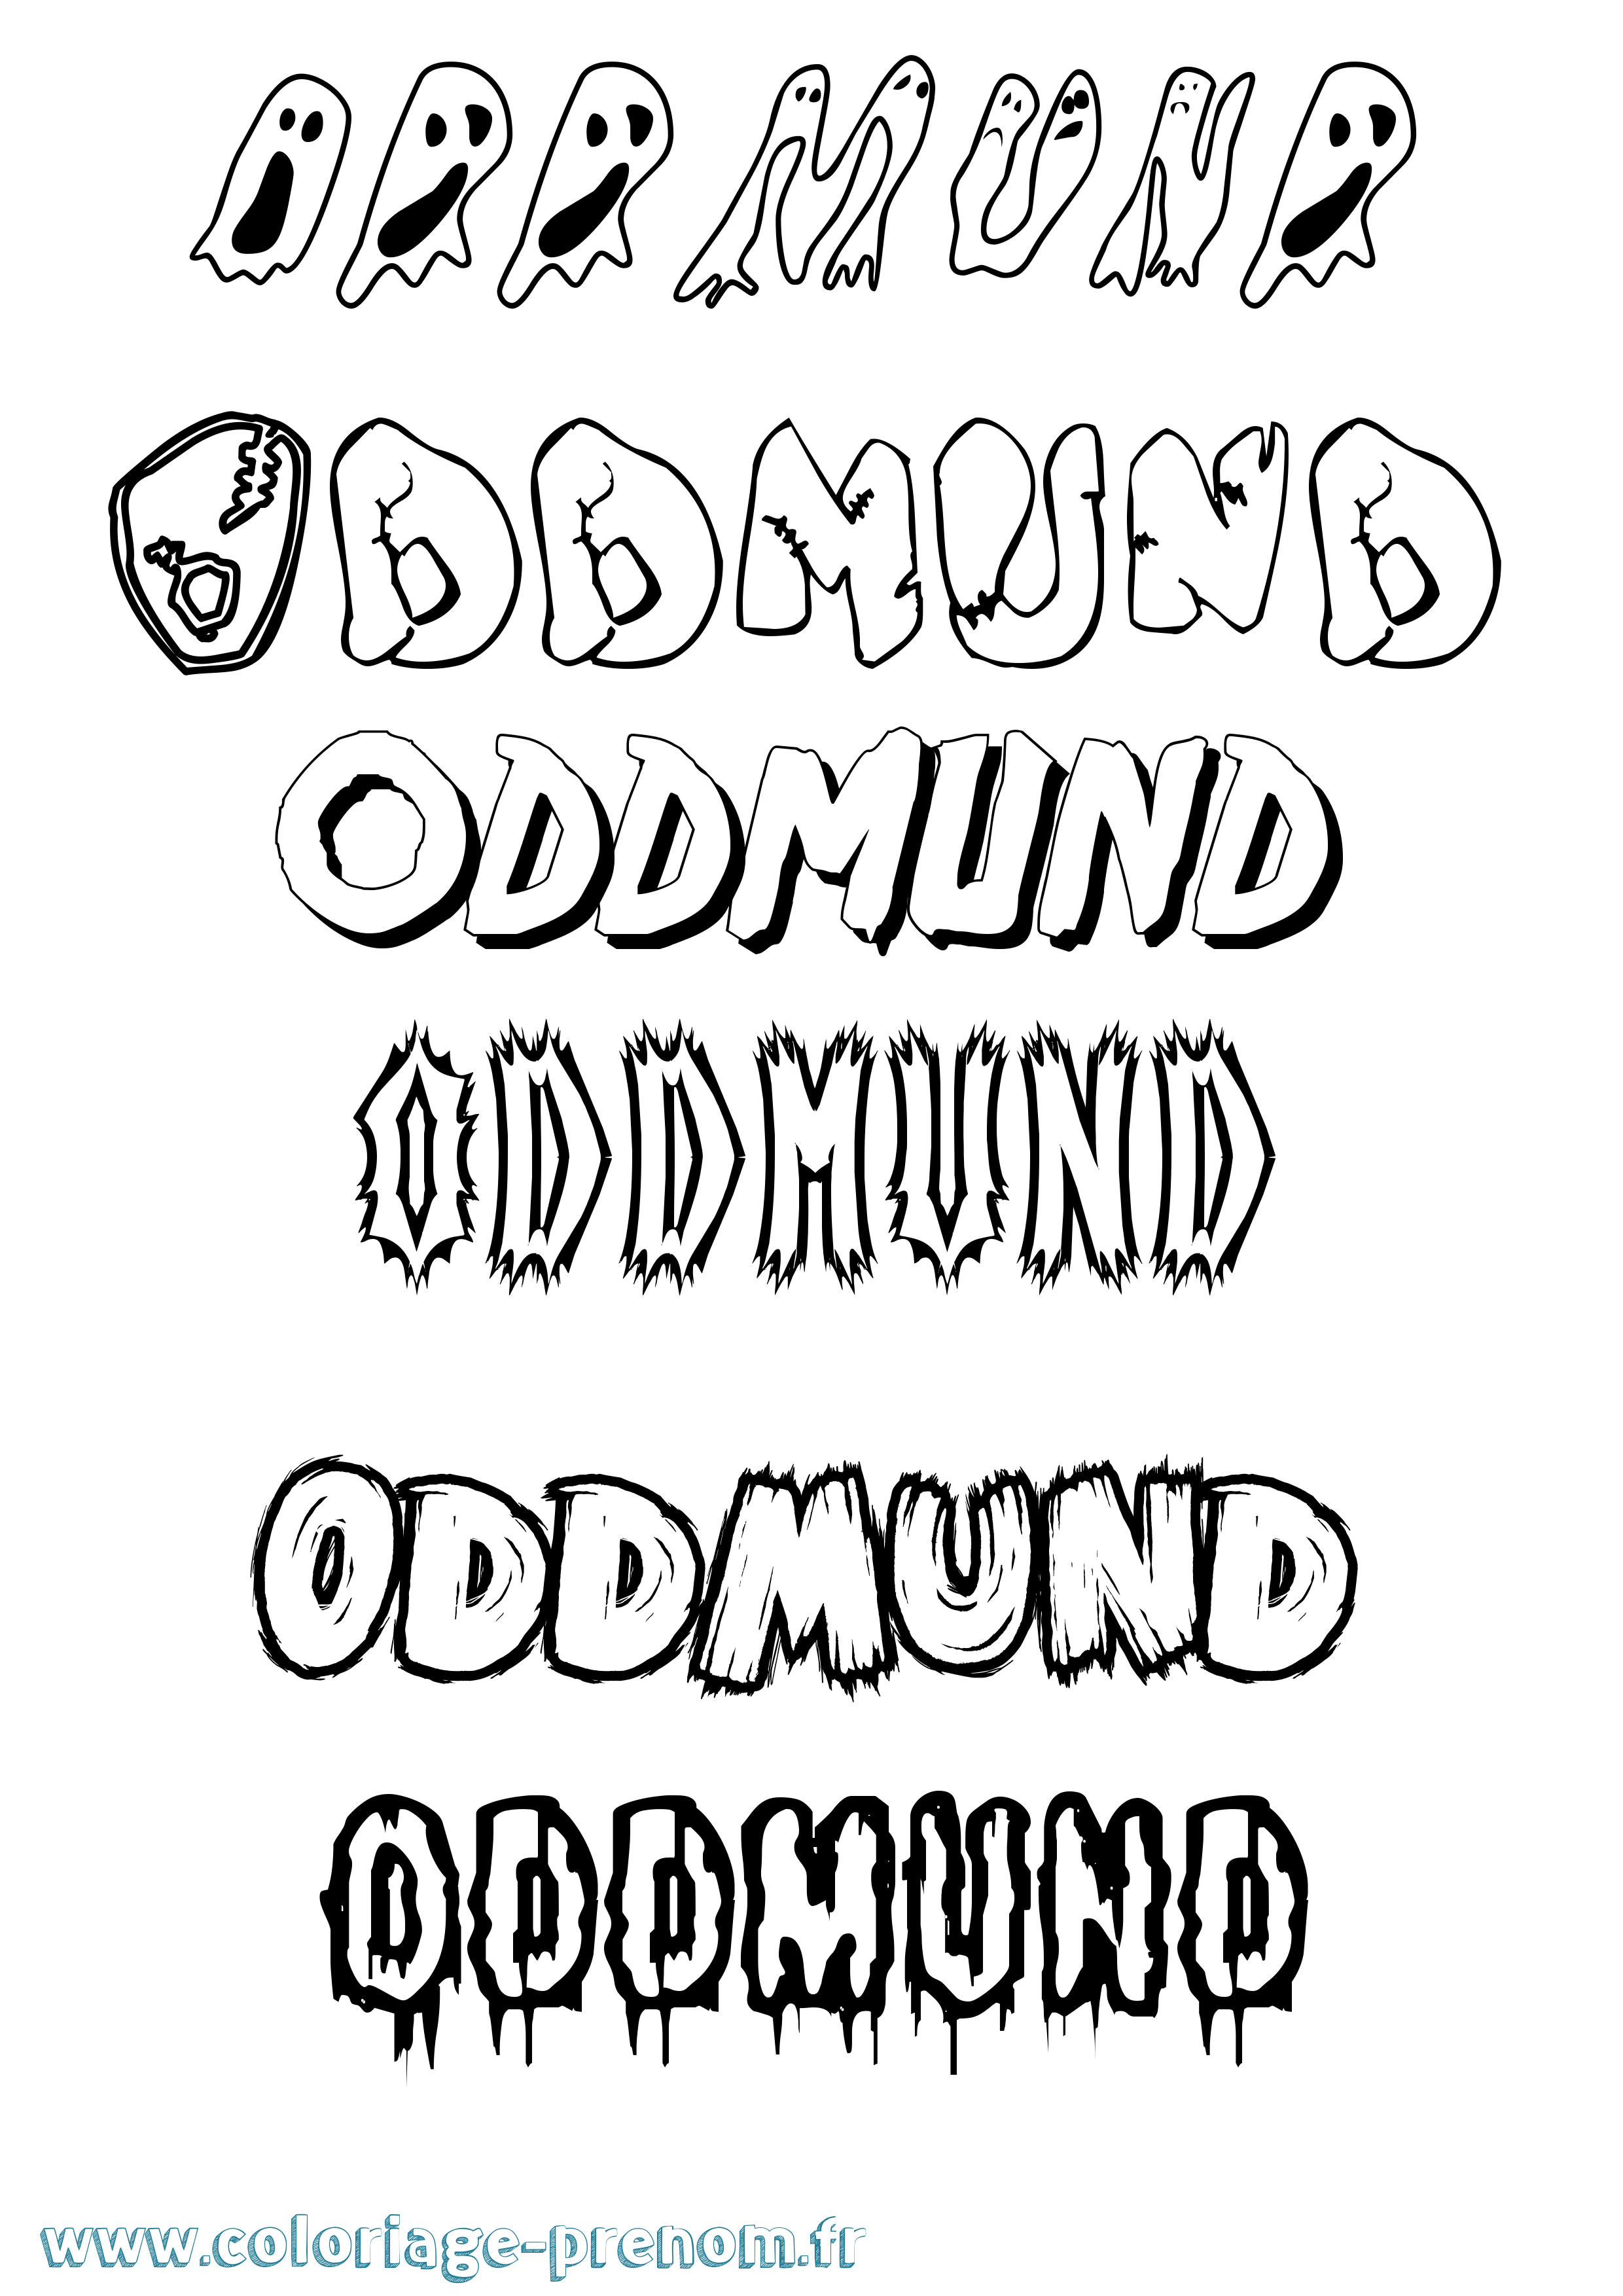 Coloriage prénom Oddmund Frisson